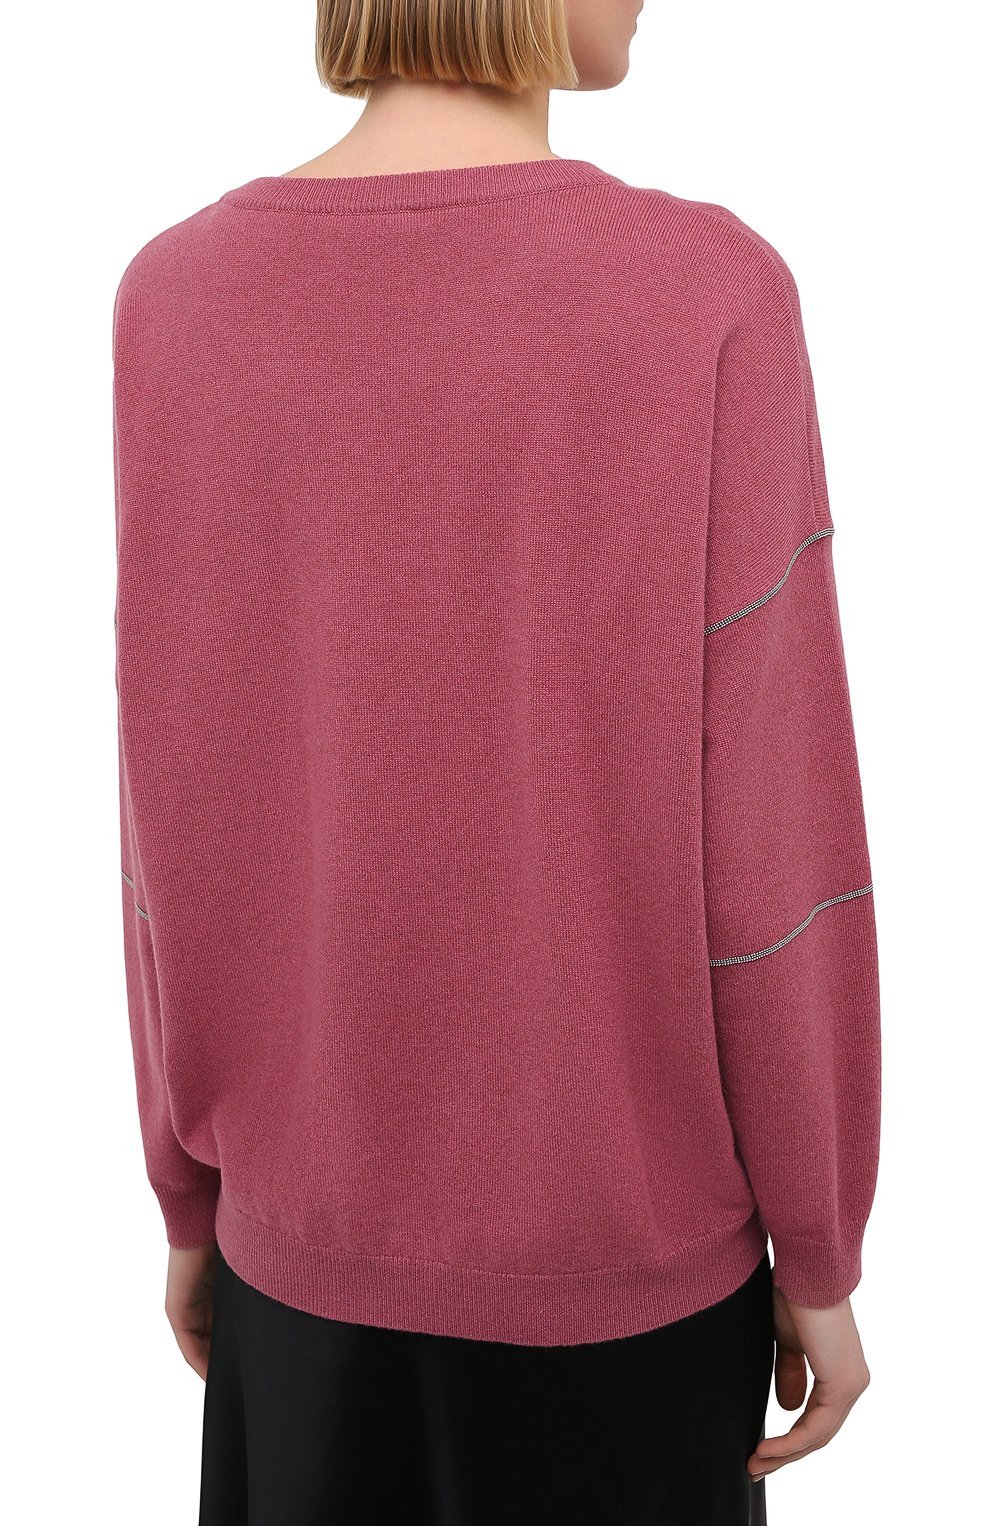 Пуловер из шерсти и кашемира | Brunello Cucinelli | Розовый - 6